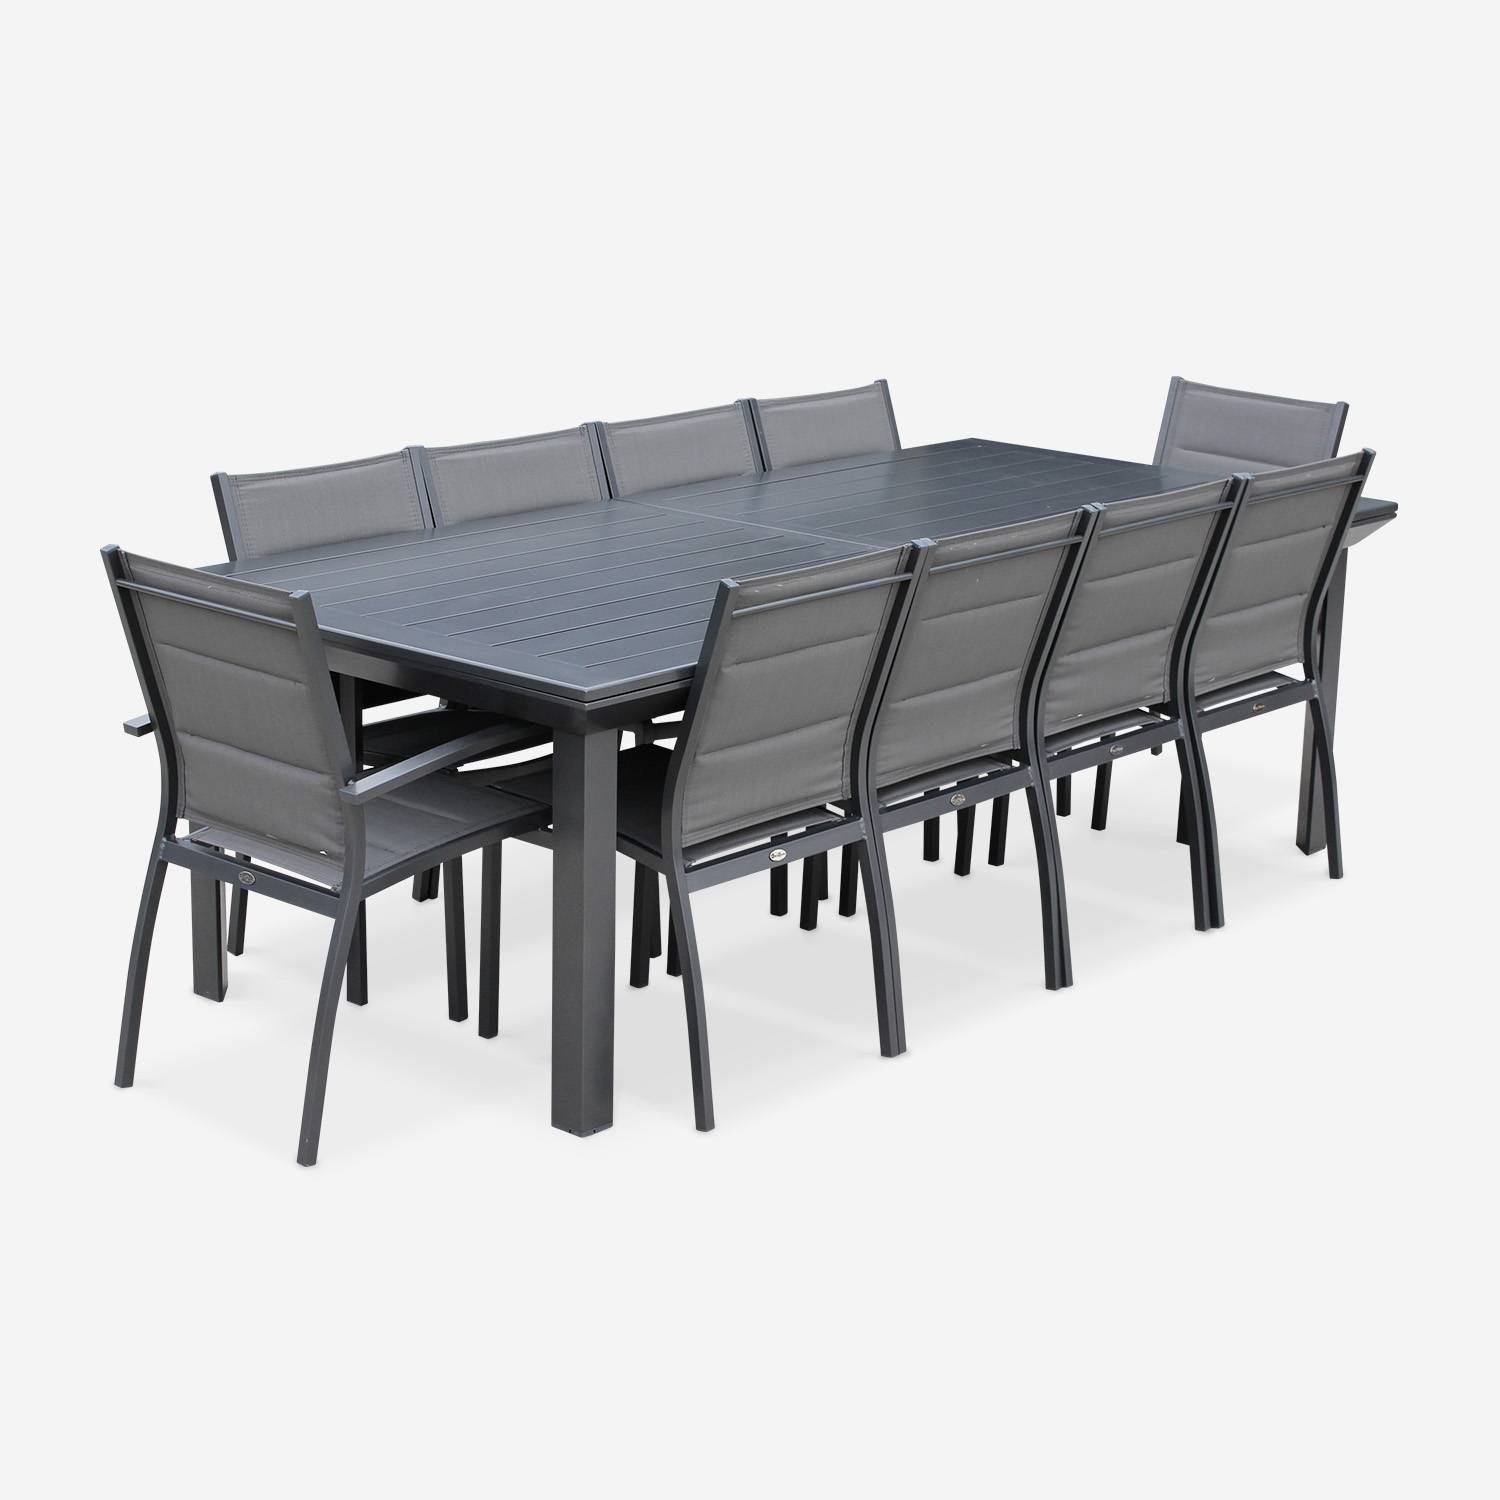 Tuinset Odenton, 1 uitschuifbare tafel, 2 fauteuils, 8 stoelen van aluminium en textileen Photo2